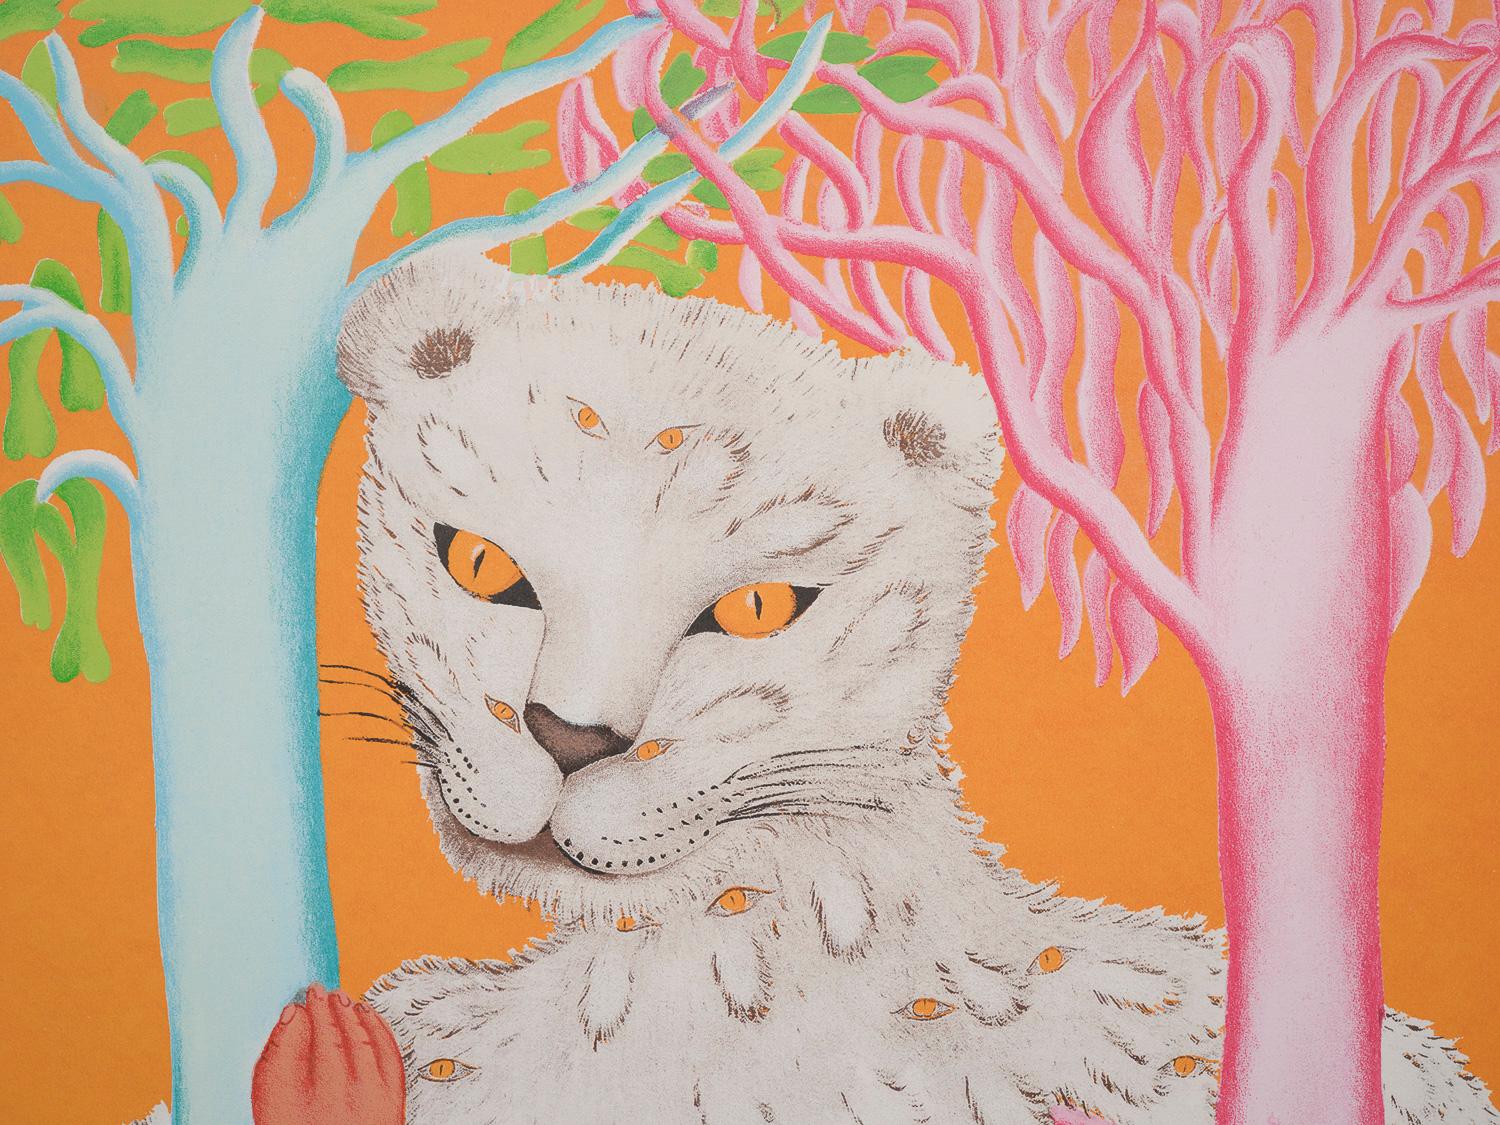 Leoparda de Ojitos - Print de Cecilia Vicuña